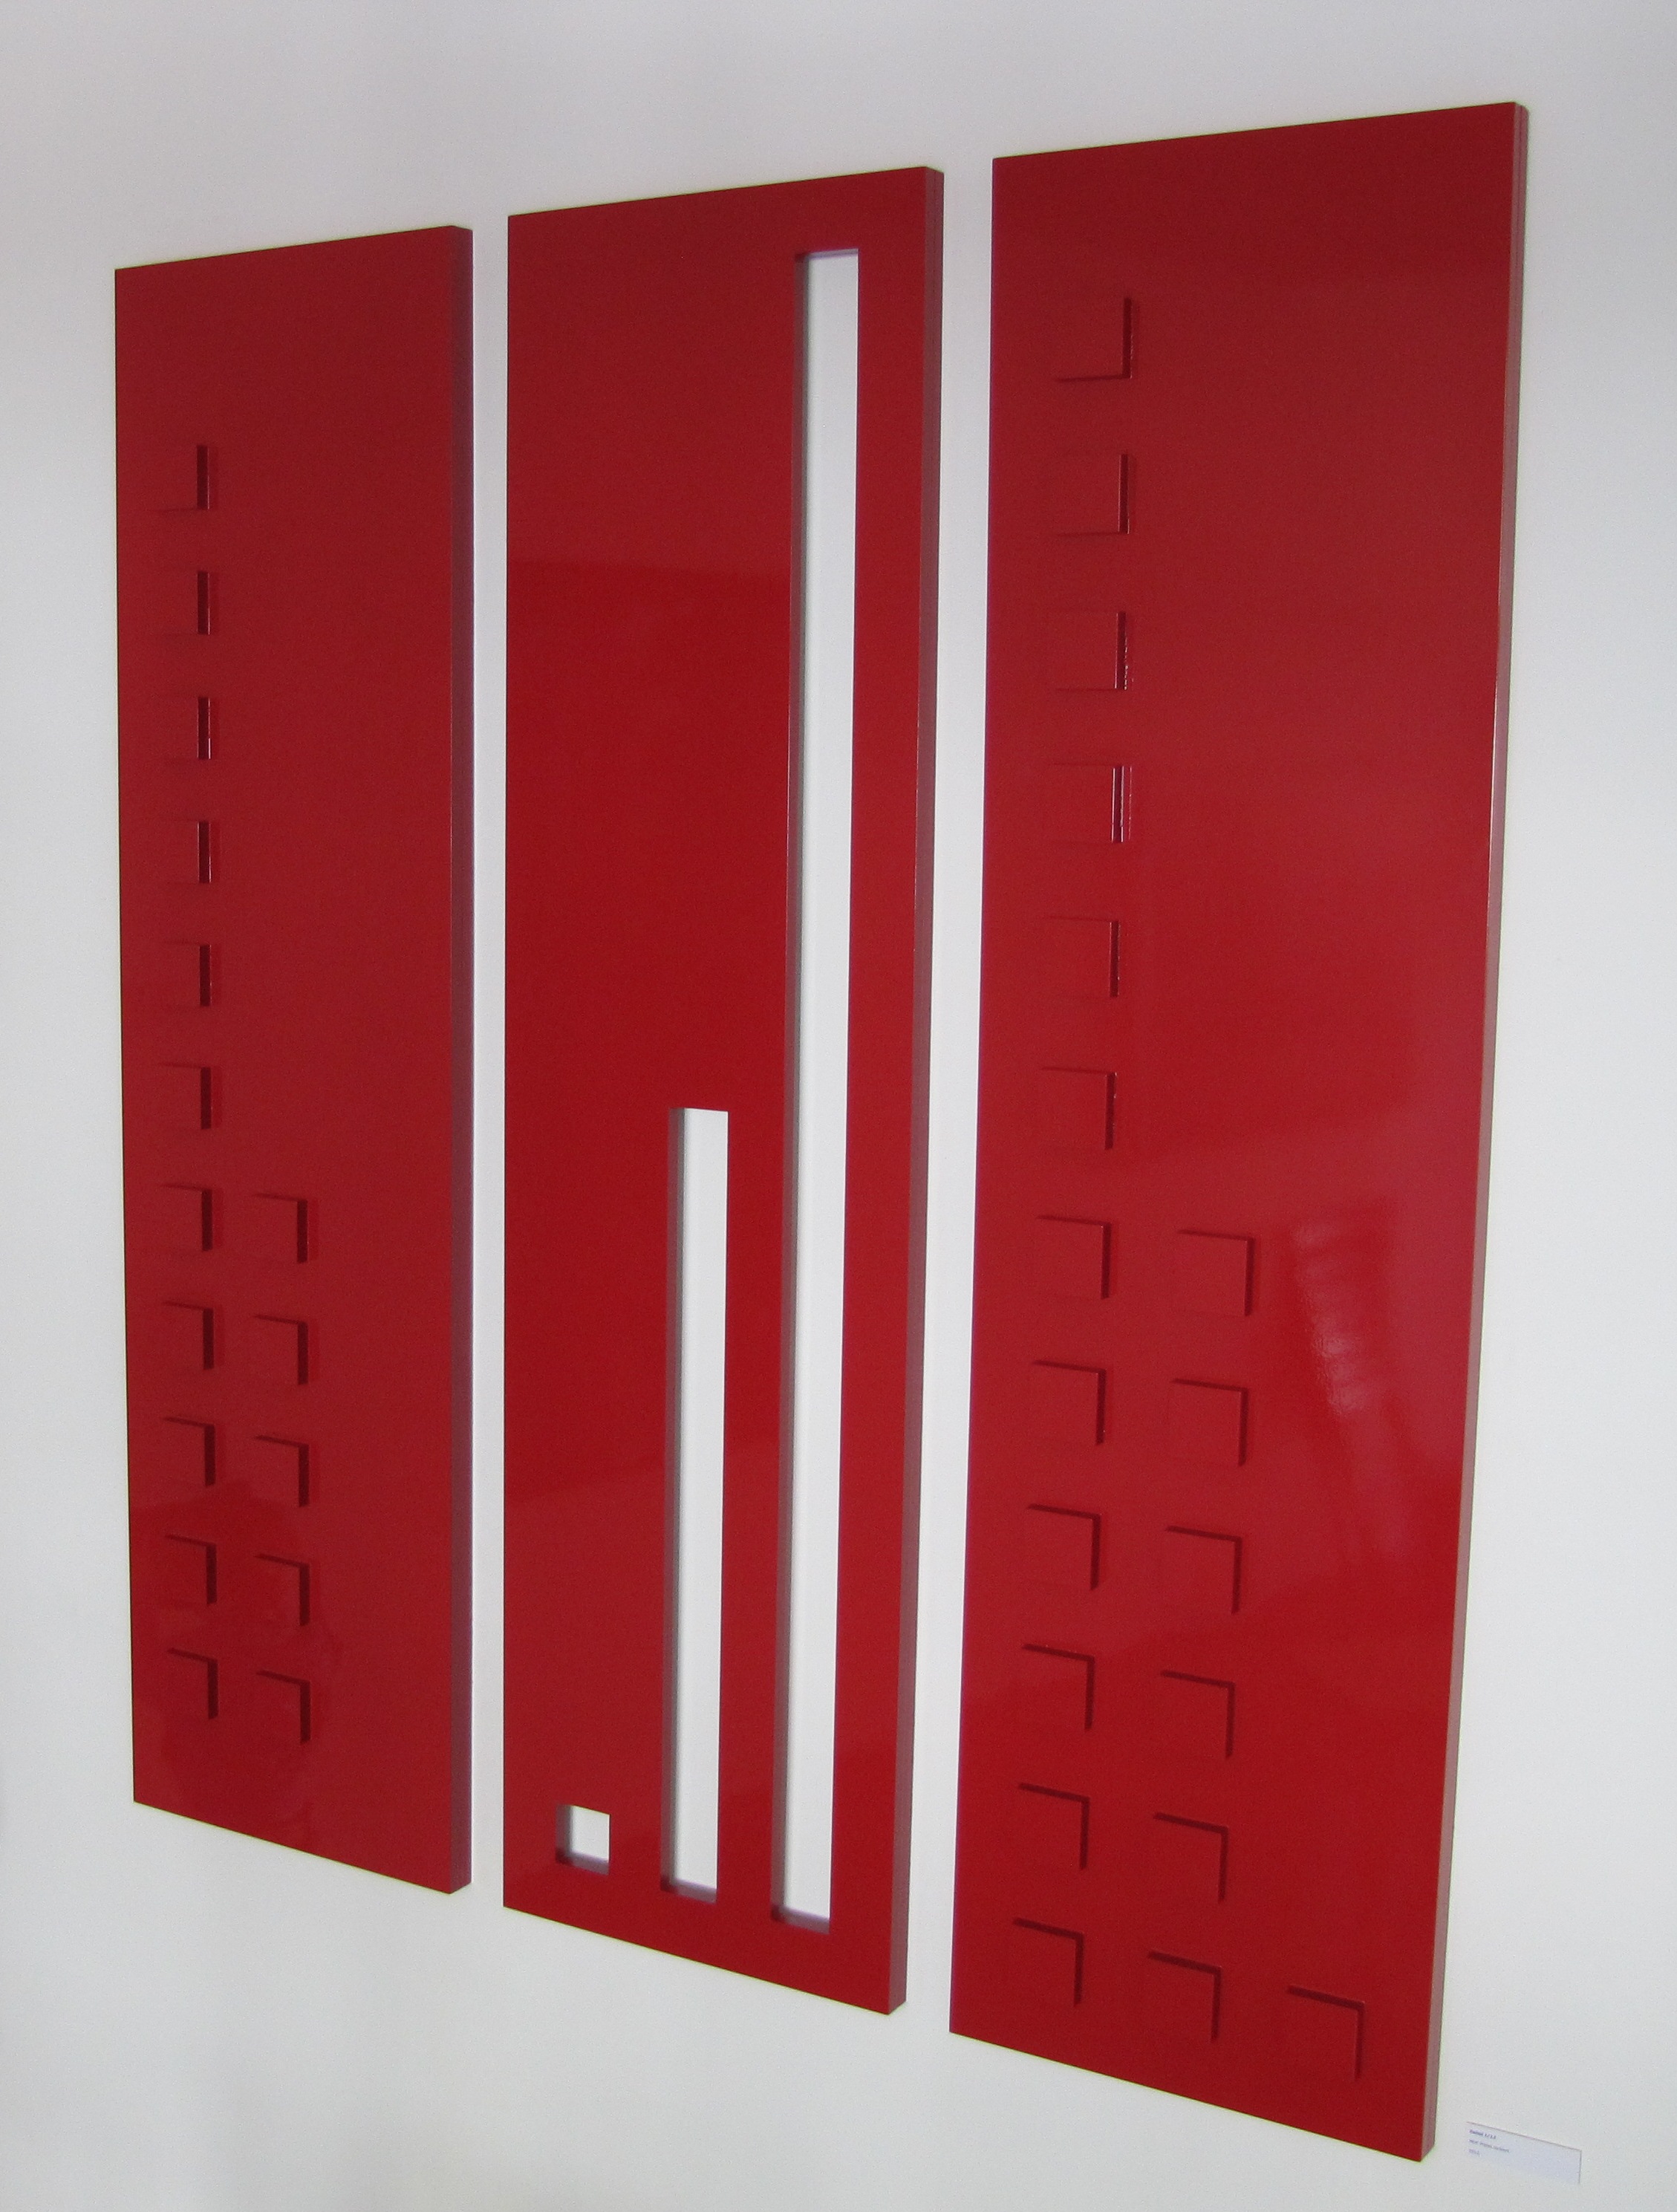 2012 wood fibrebord, red varnished 183/48/4